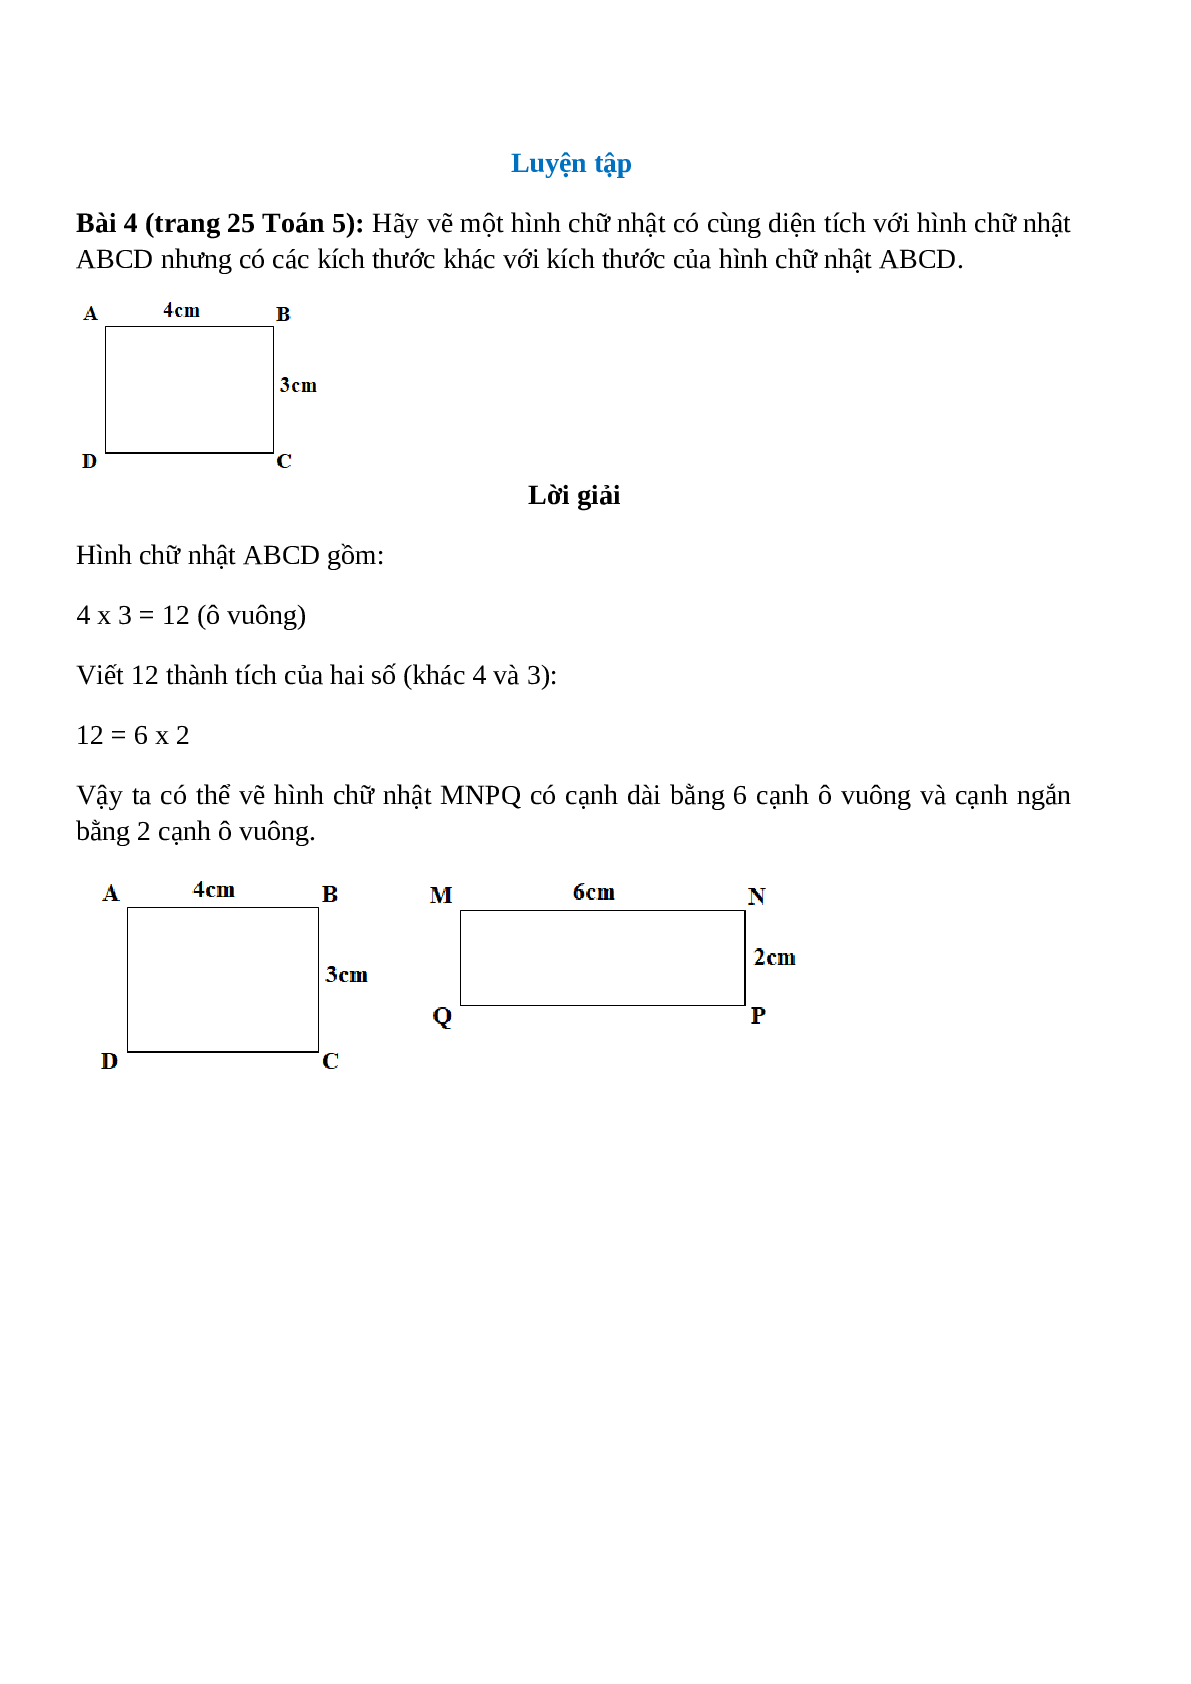 Hãy vẽ một hình chữ nhật có cùng diện tích với hình chữ nhật ABCD (trang 1)